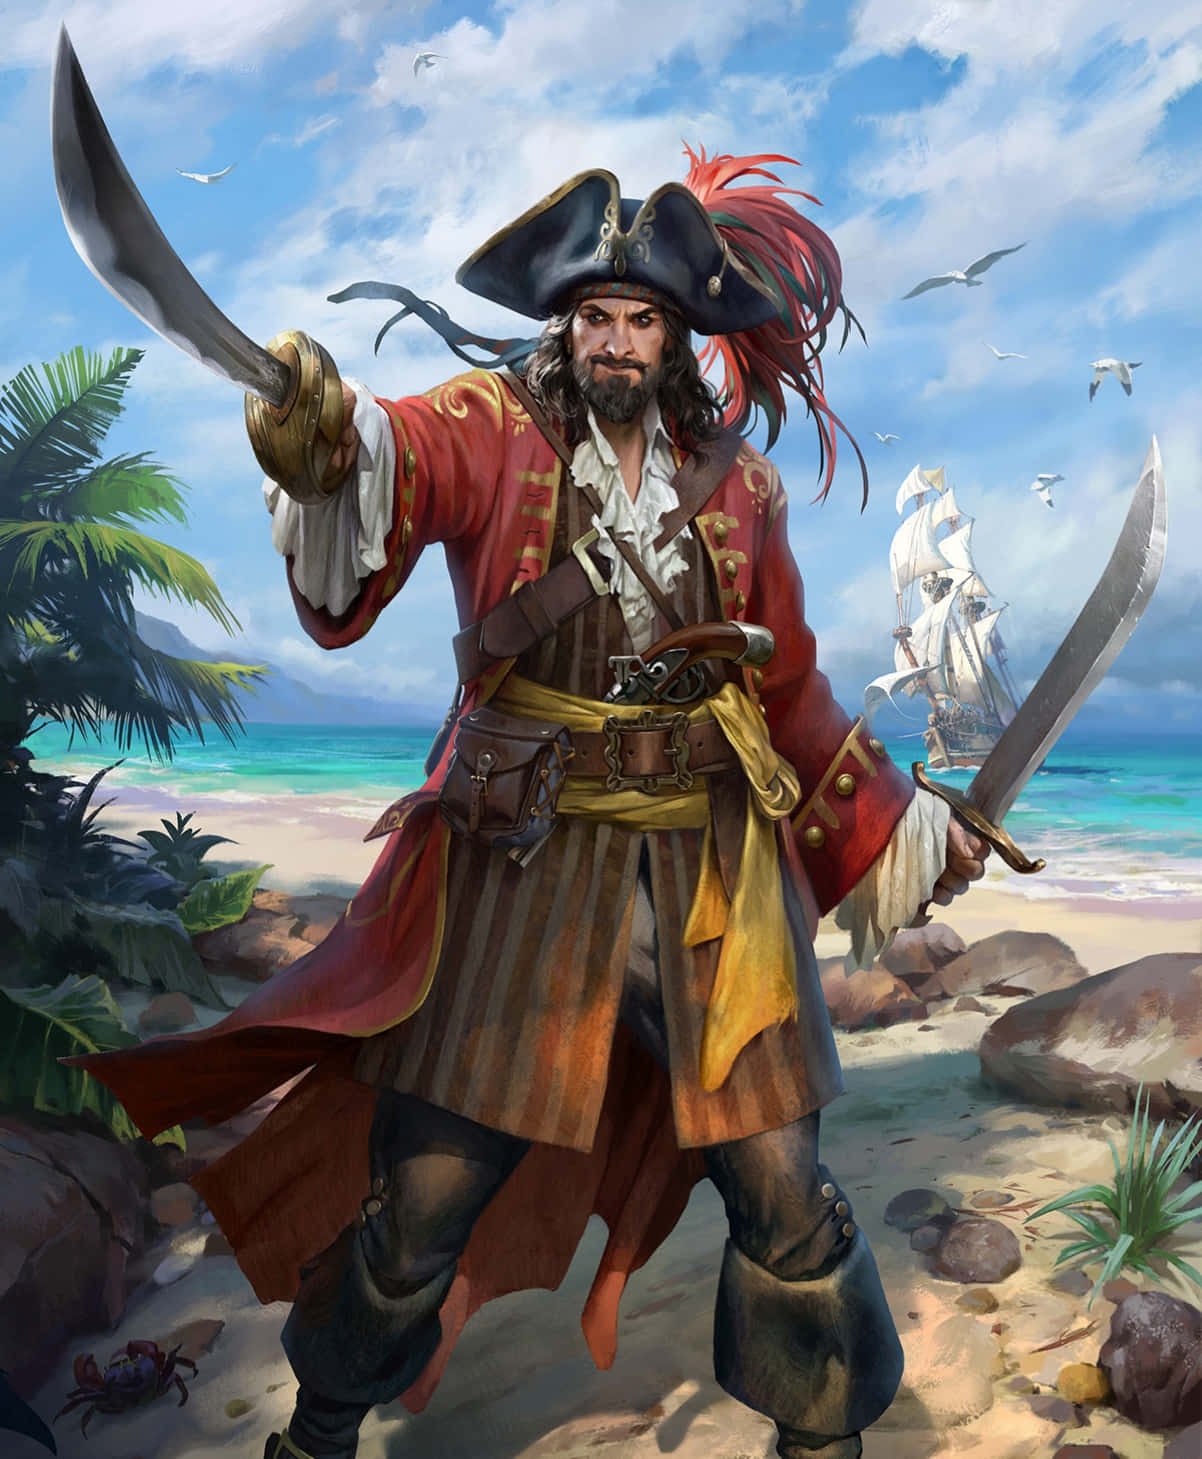 Unpossente Pirata Si Erge Solitario Sulla Spiaggia, Osservando L'orizzonte Del Mare.